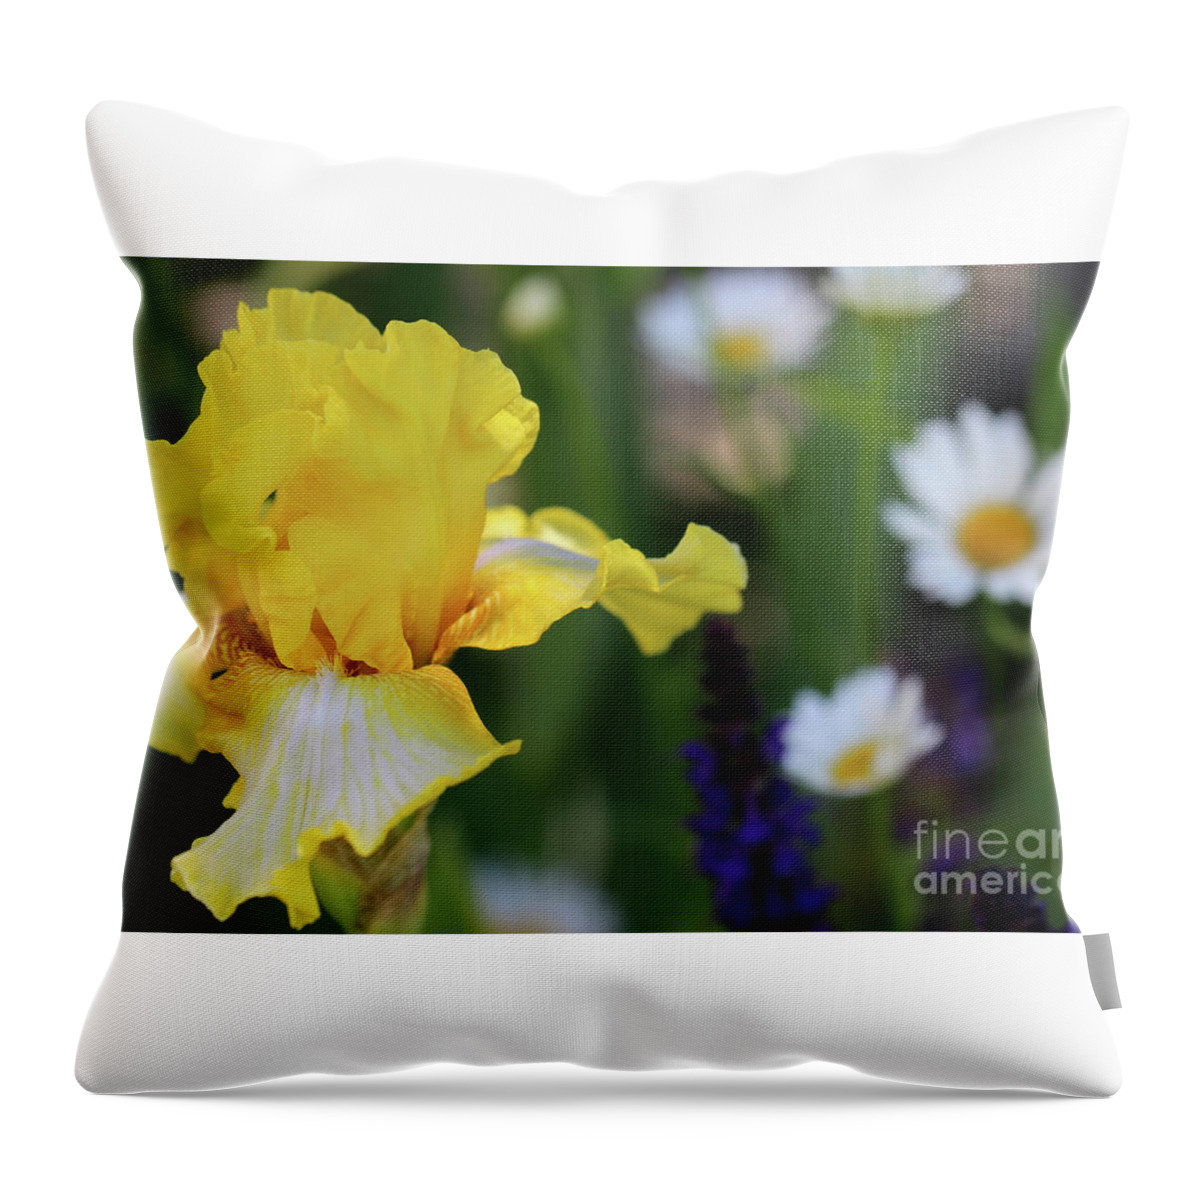 Flower Throw Pillow featuring the photograph Yellow iris in Spring Garden by Karen Adams